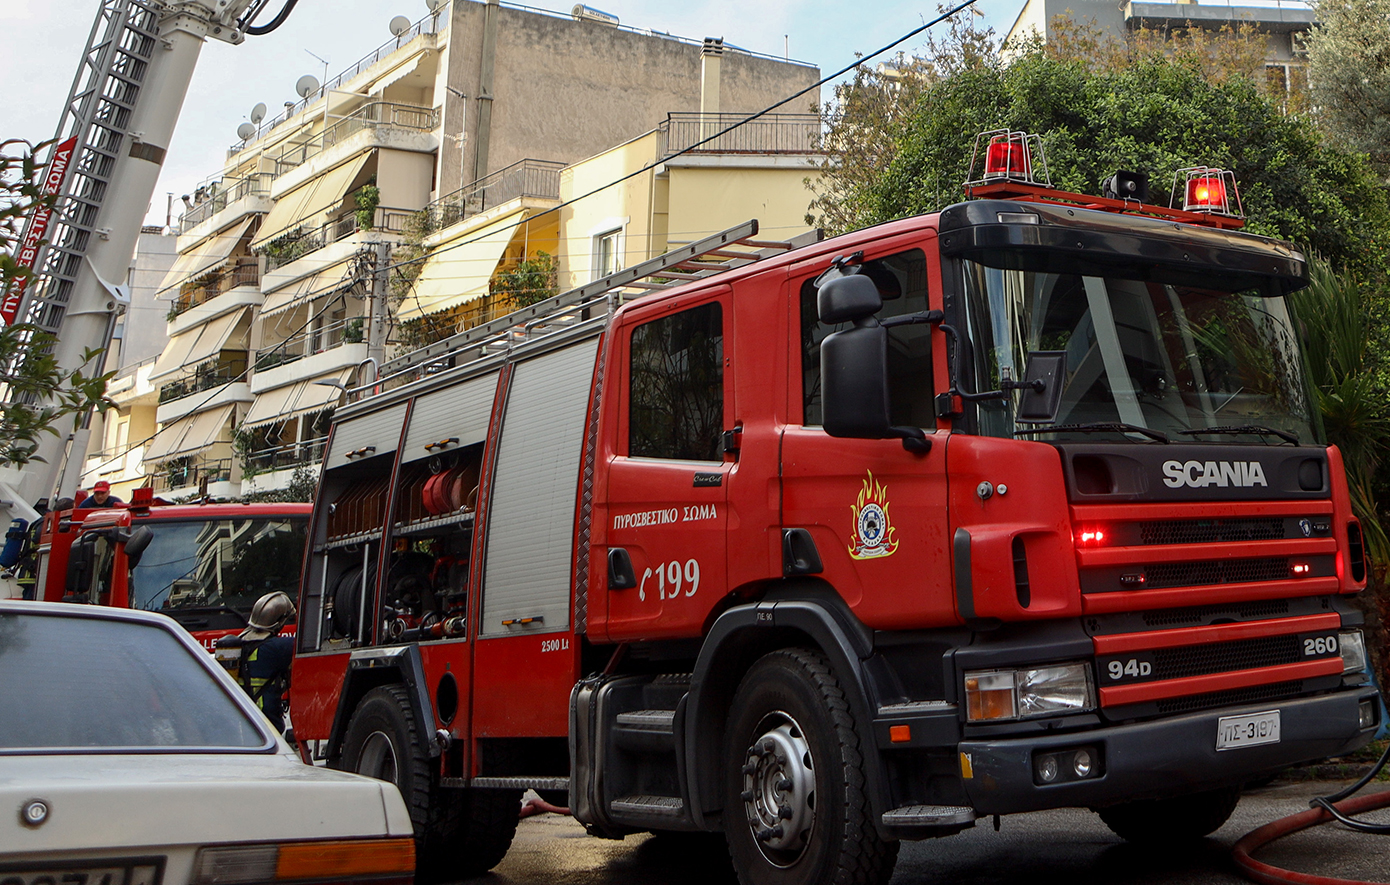 Ένας νεκρός από την φωτιά που ξέσπασε σε ξενοδοχείο στη Λιοσίων &#8211; Απεγκλωβίστηκαν 4 άτομα